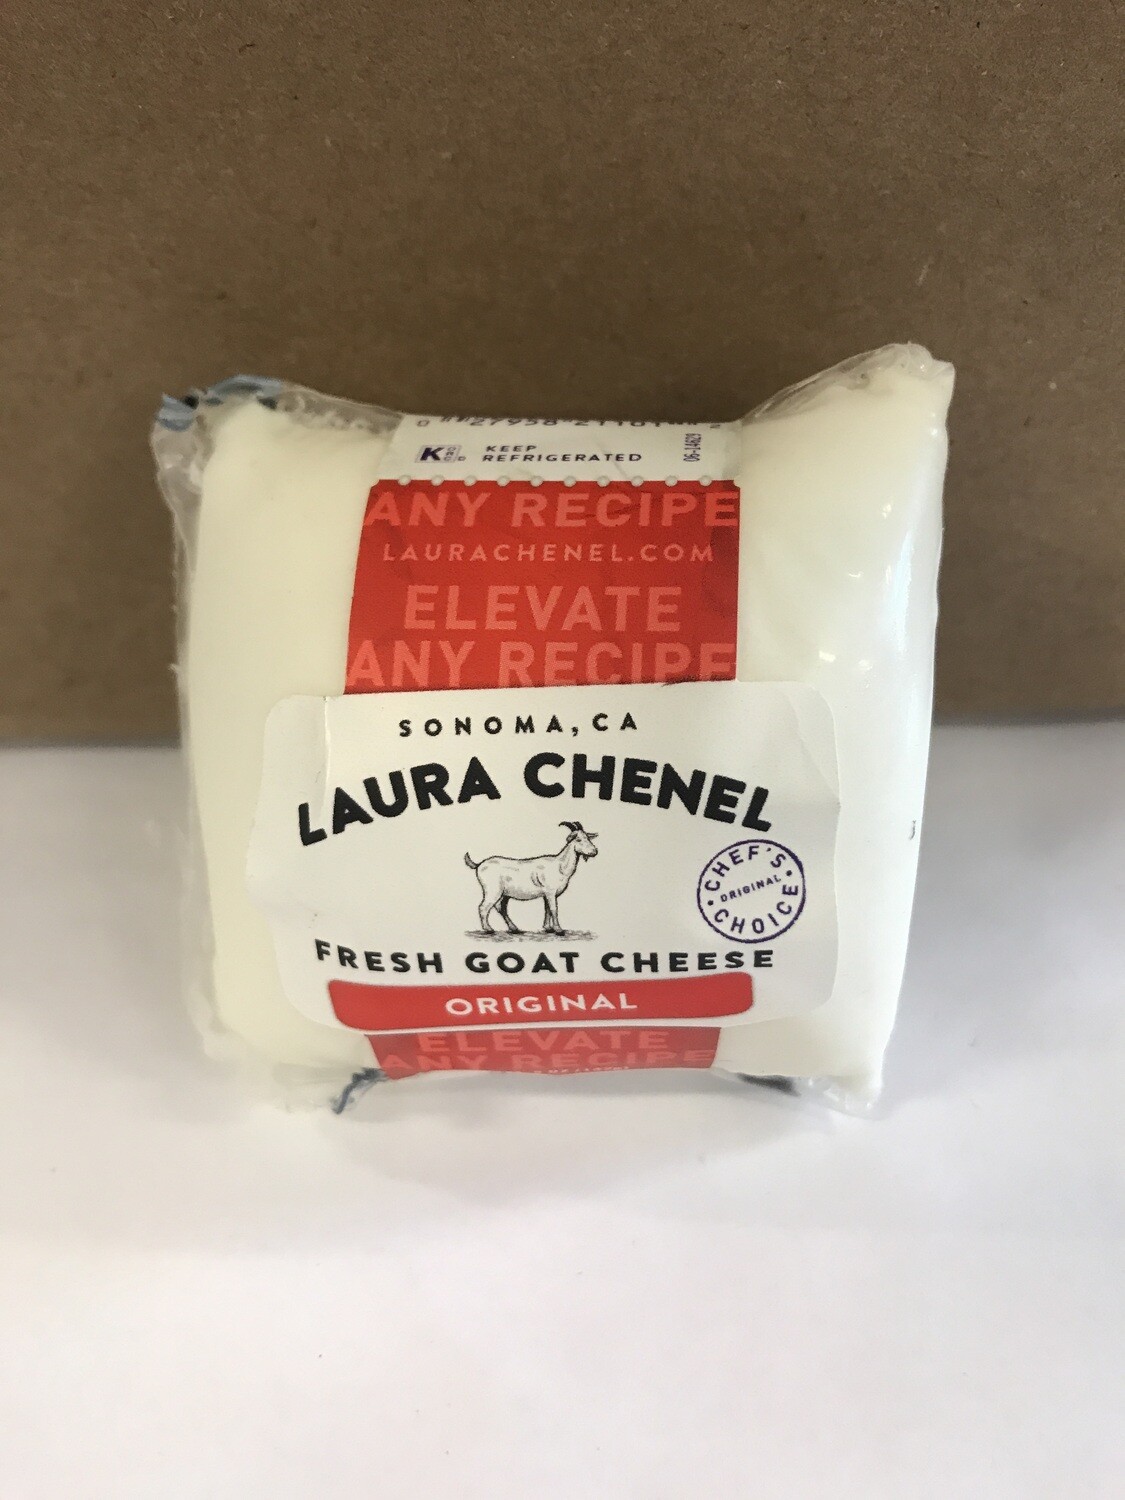 Deli / Cheese / Laura Chenel Chevre, Plain